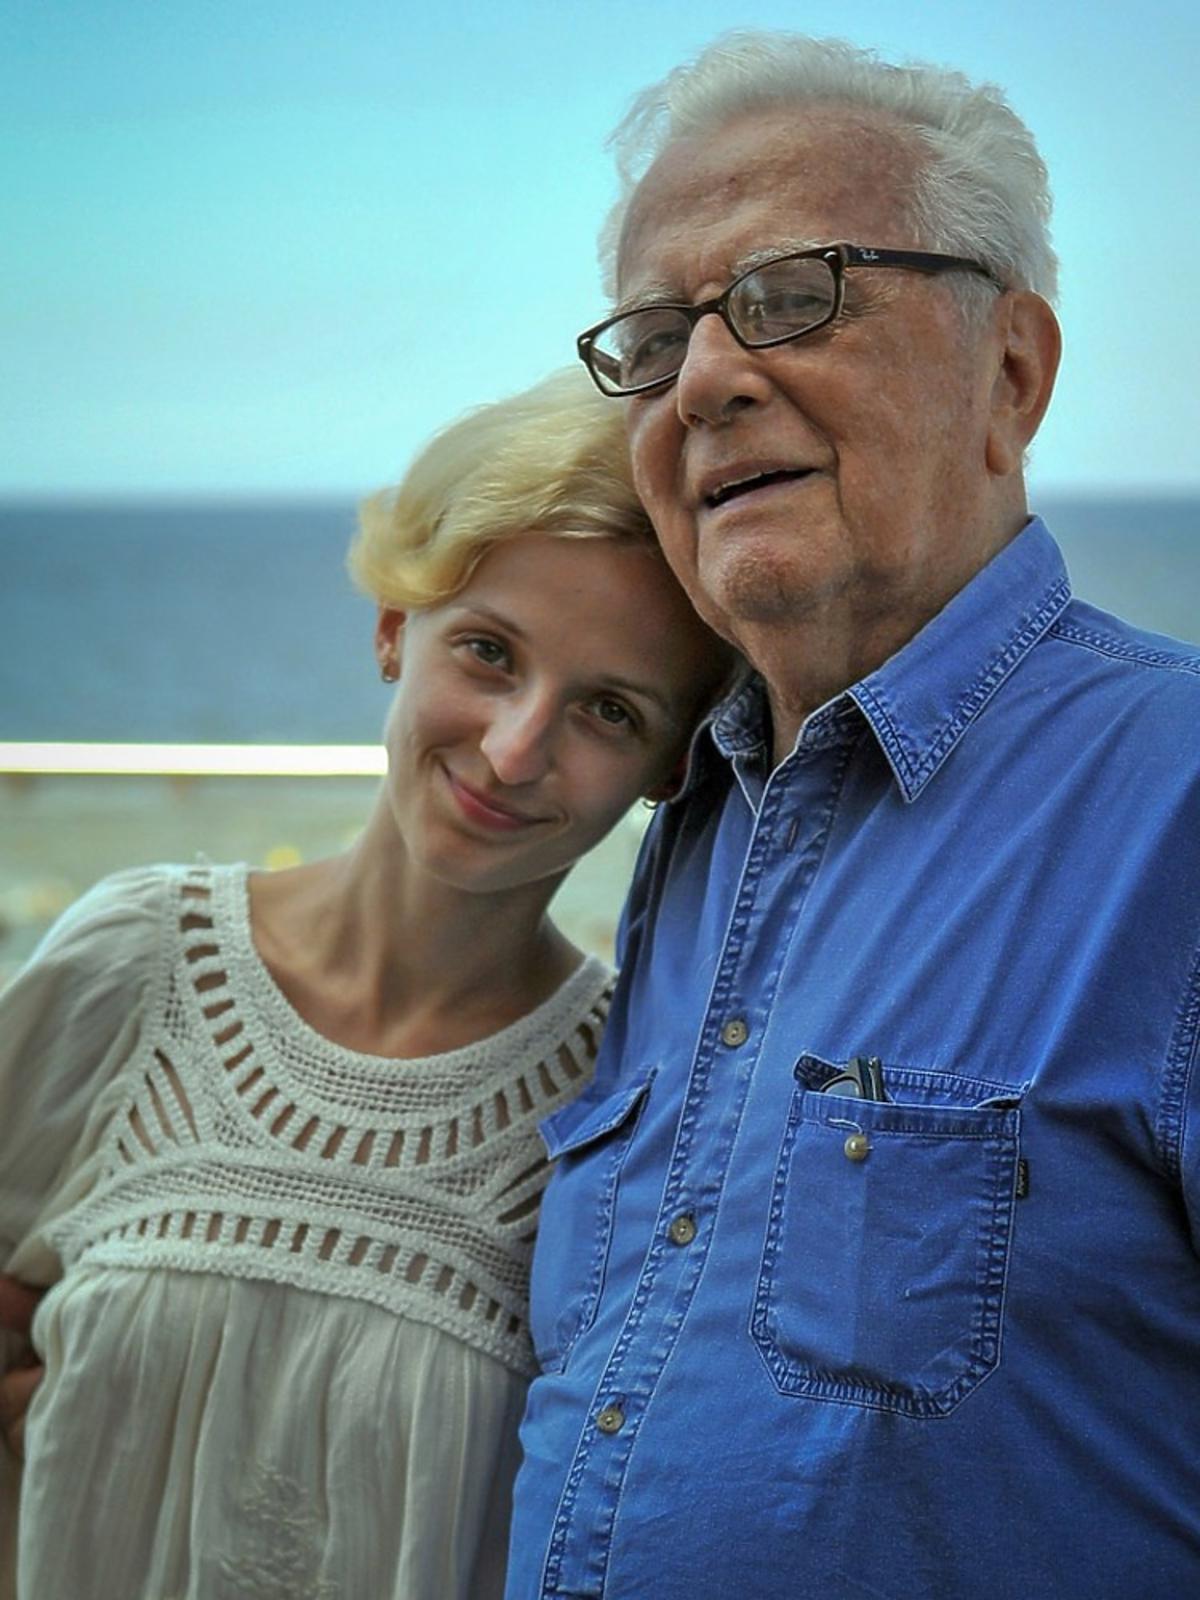 Kamila Łapicka w białej ażurowej bluzce stoi przytulona do męża Andrzeja Łapickiego w niebieskoej koszuli,w tle morze i plaża